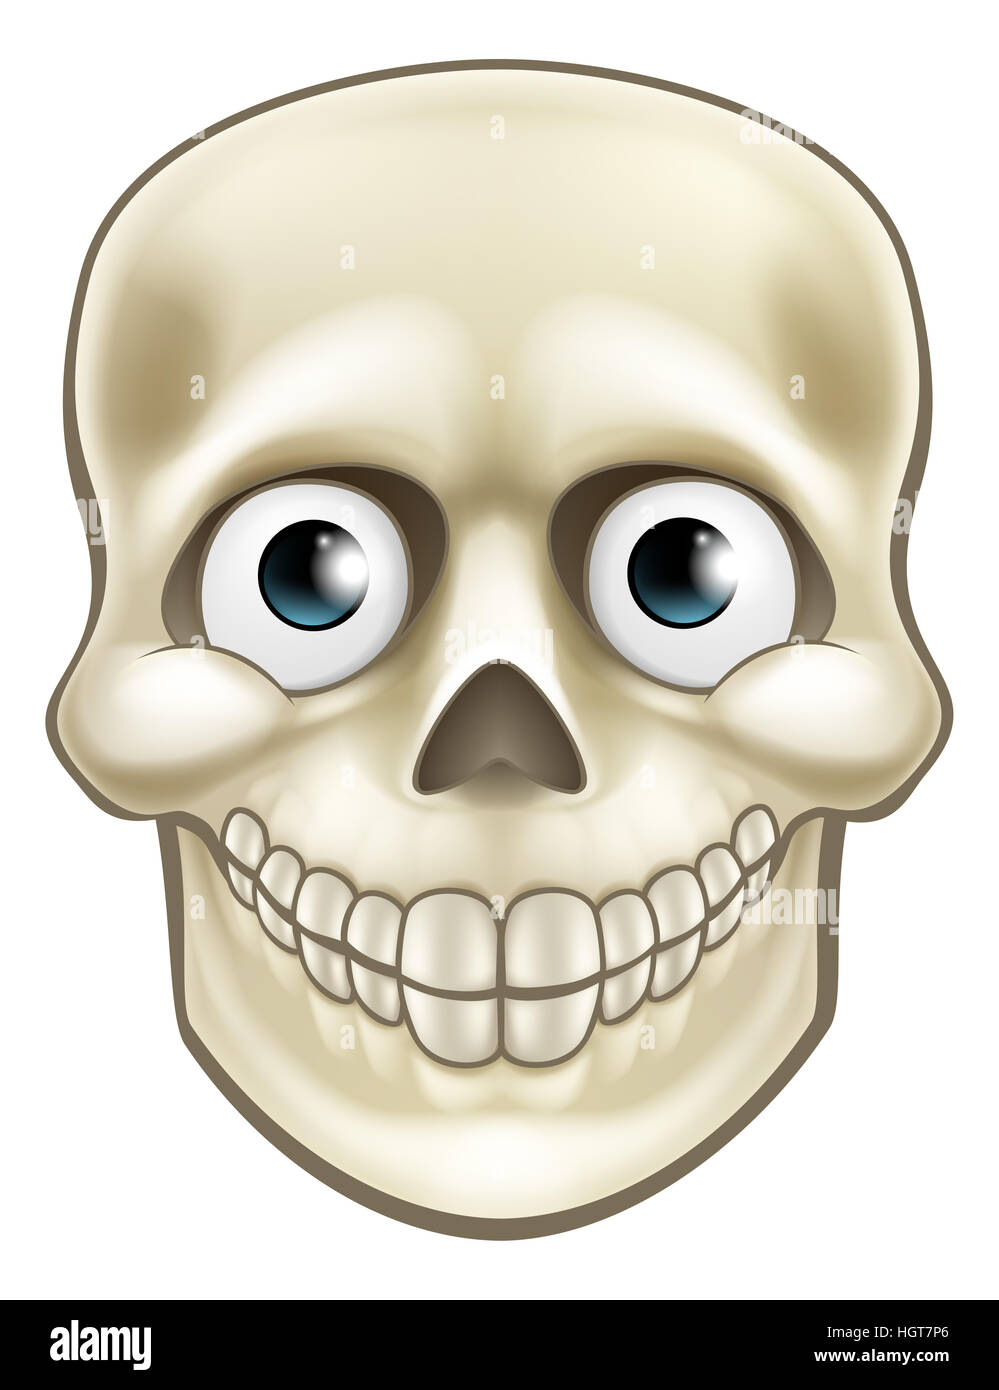 Cartoon Halloween skull skeleton character illustration Stock Photo